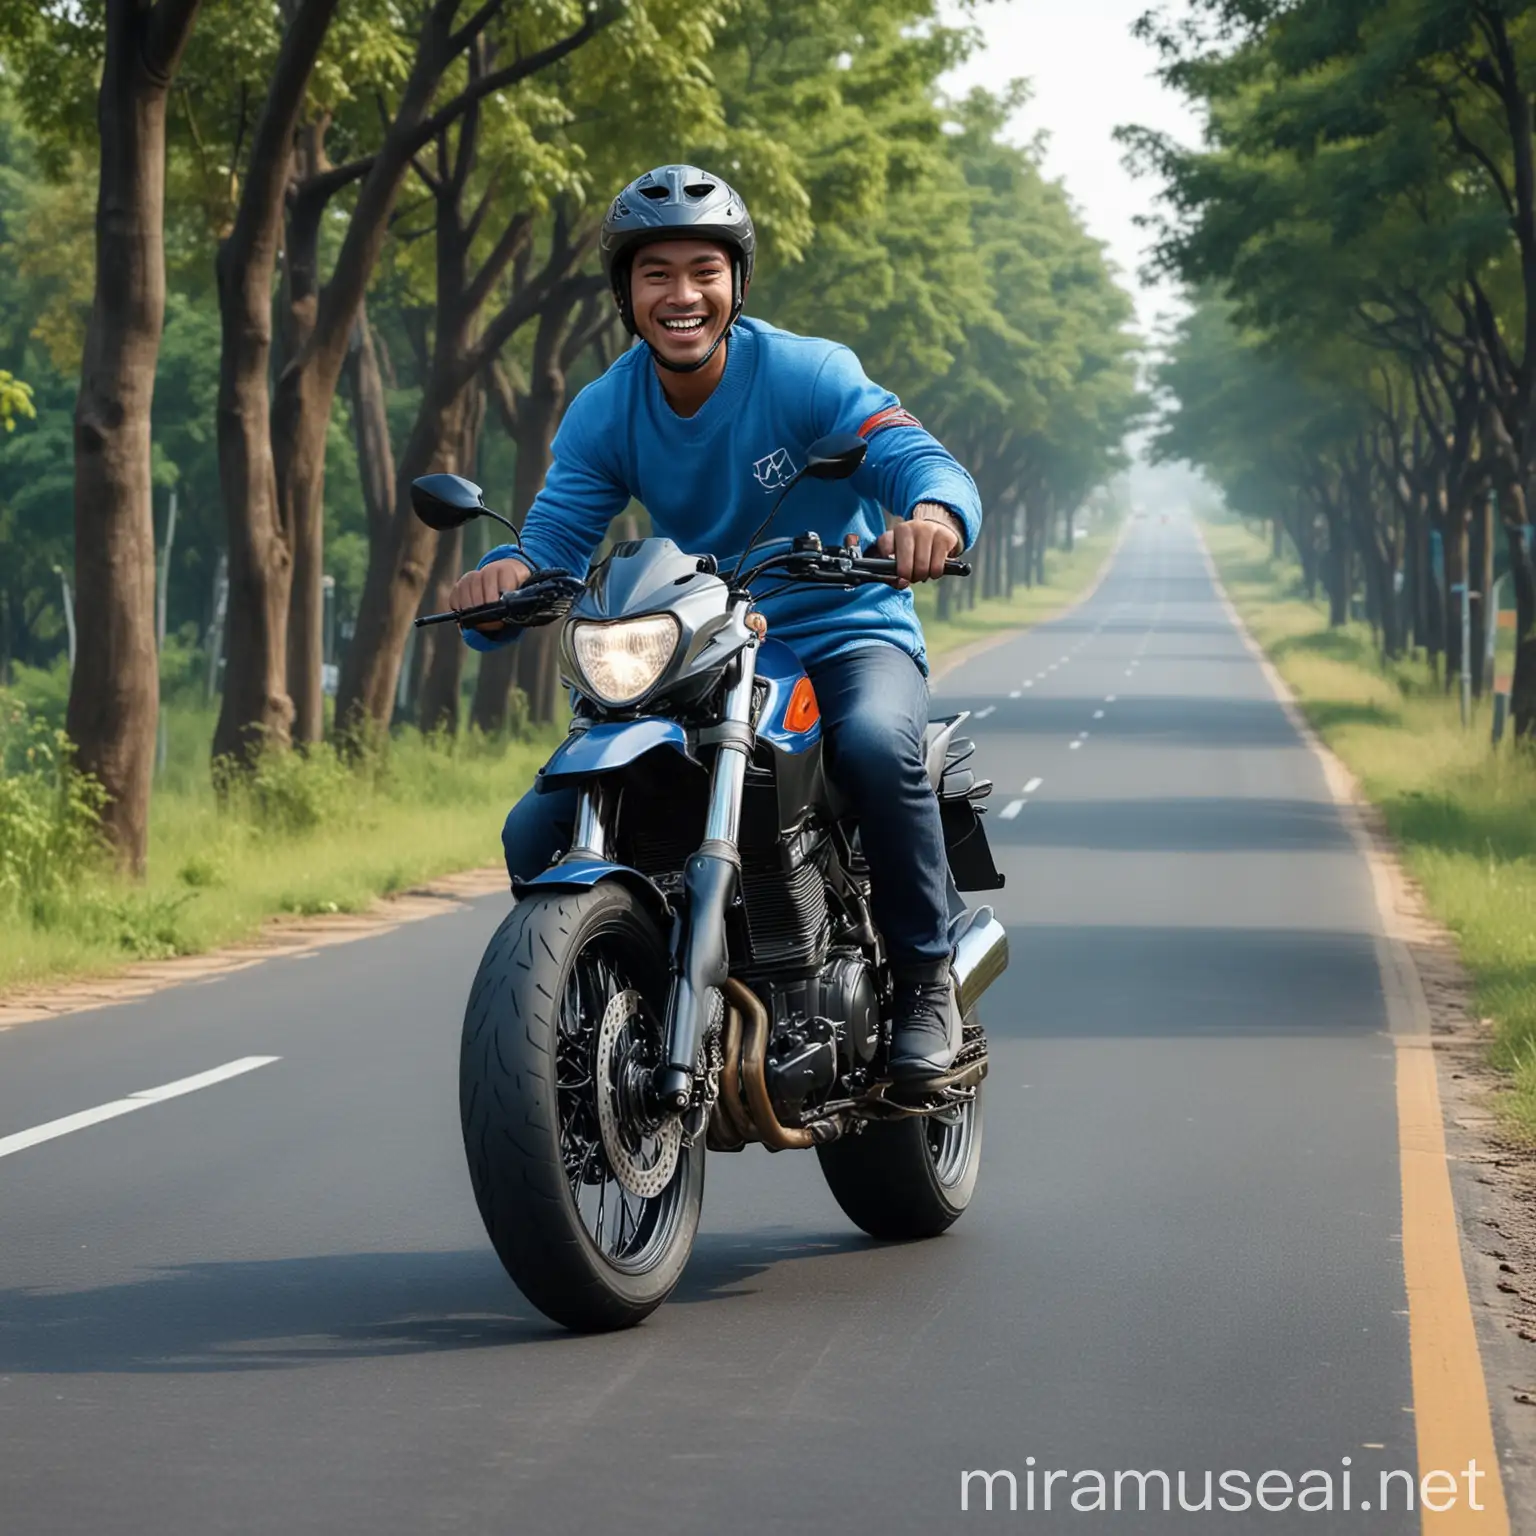 foto pria asli Indonesia berusia 30 tahun, mengendarai motor sport, sweter biru, wheelie, sepatu olahraga, tersenyum, background jalan lurus, pohon, kenyataan, hipperrealistik, 8k